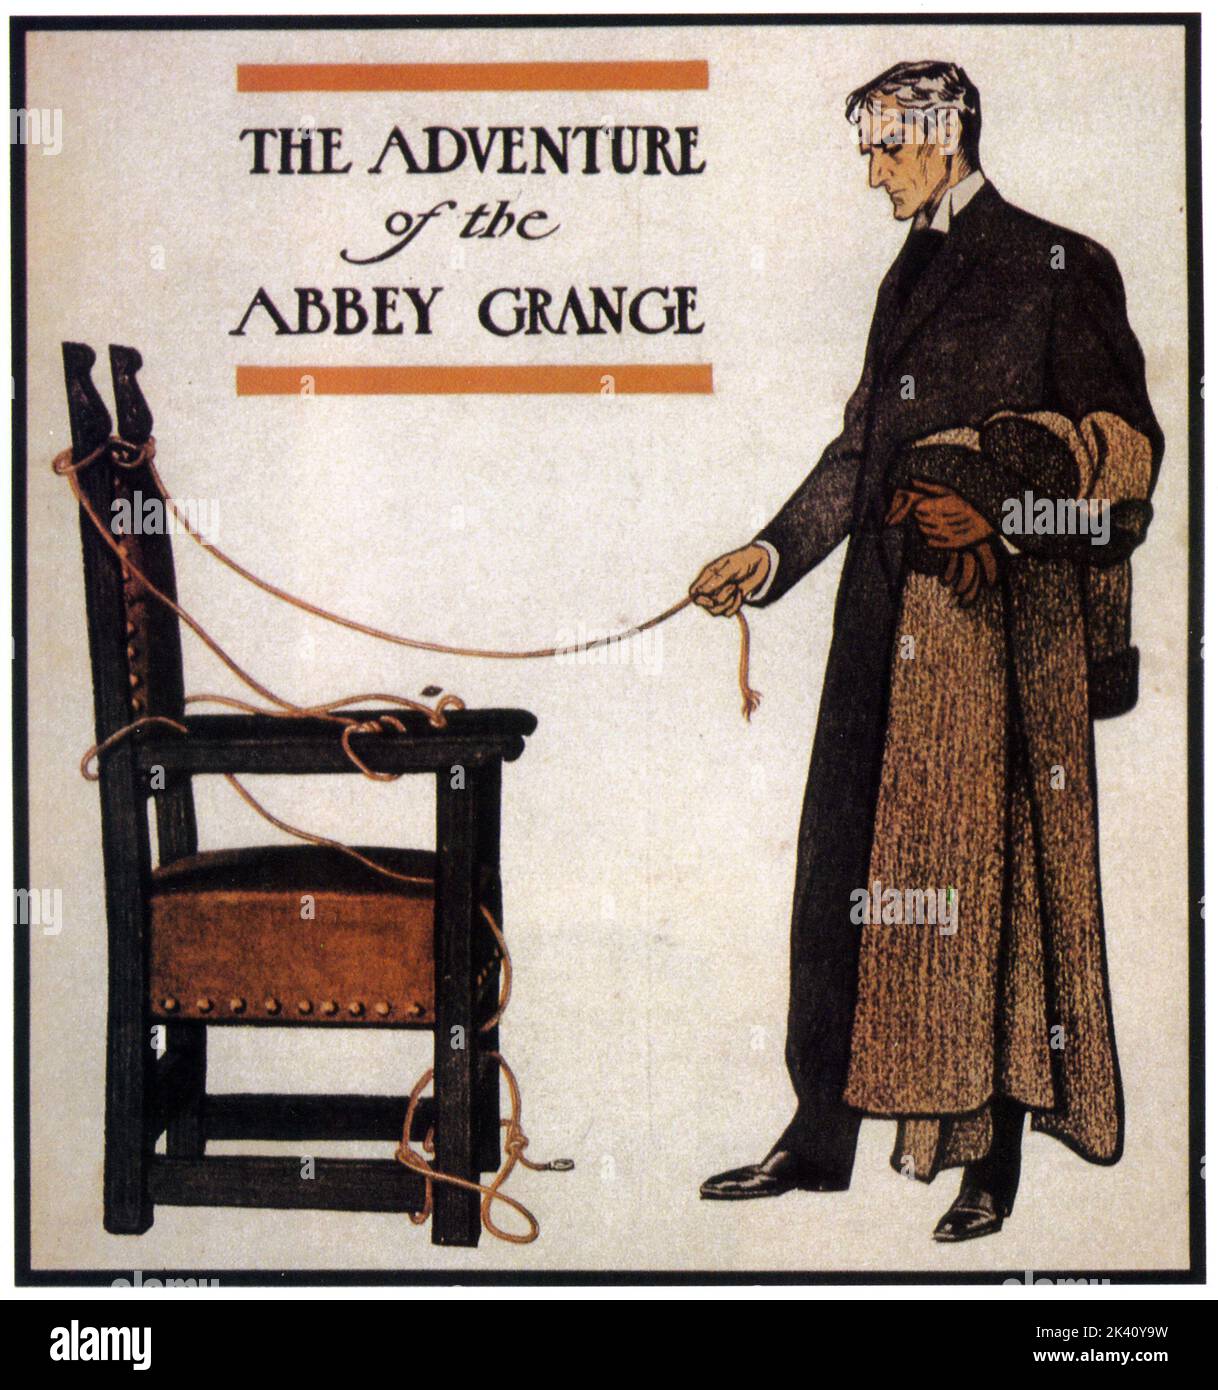 SHERLOCK HOLMES según lo dibujado por Frederic Dorr Steele para la portada de la revista Collier's Serialización de la aventura de la abadía Grange por Arthur Conan Doyle en diciembre de 1904. Foto de stock